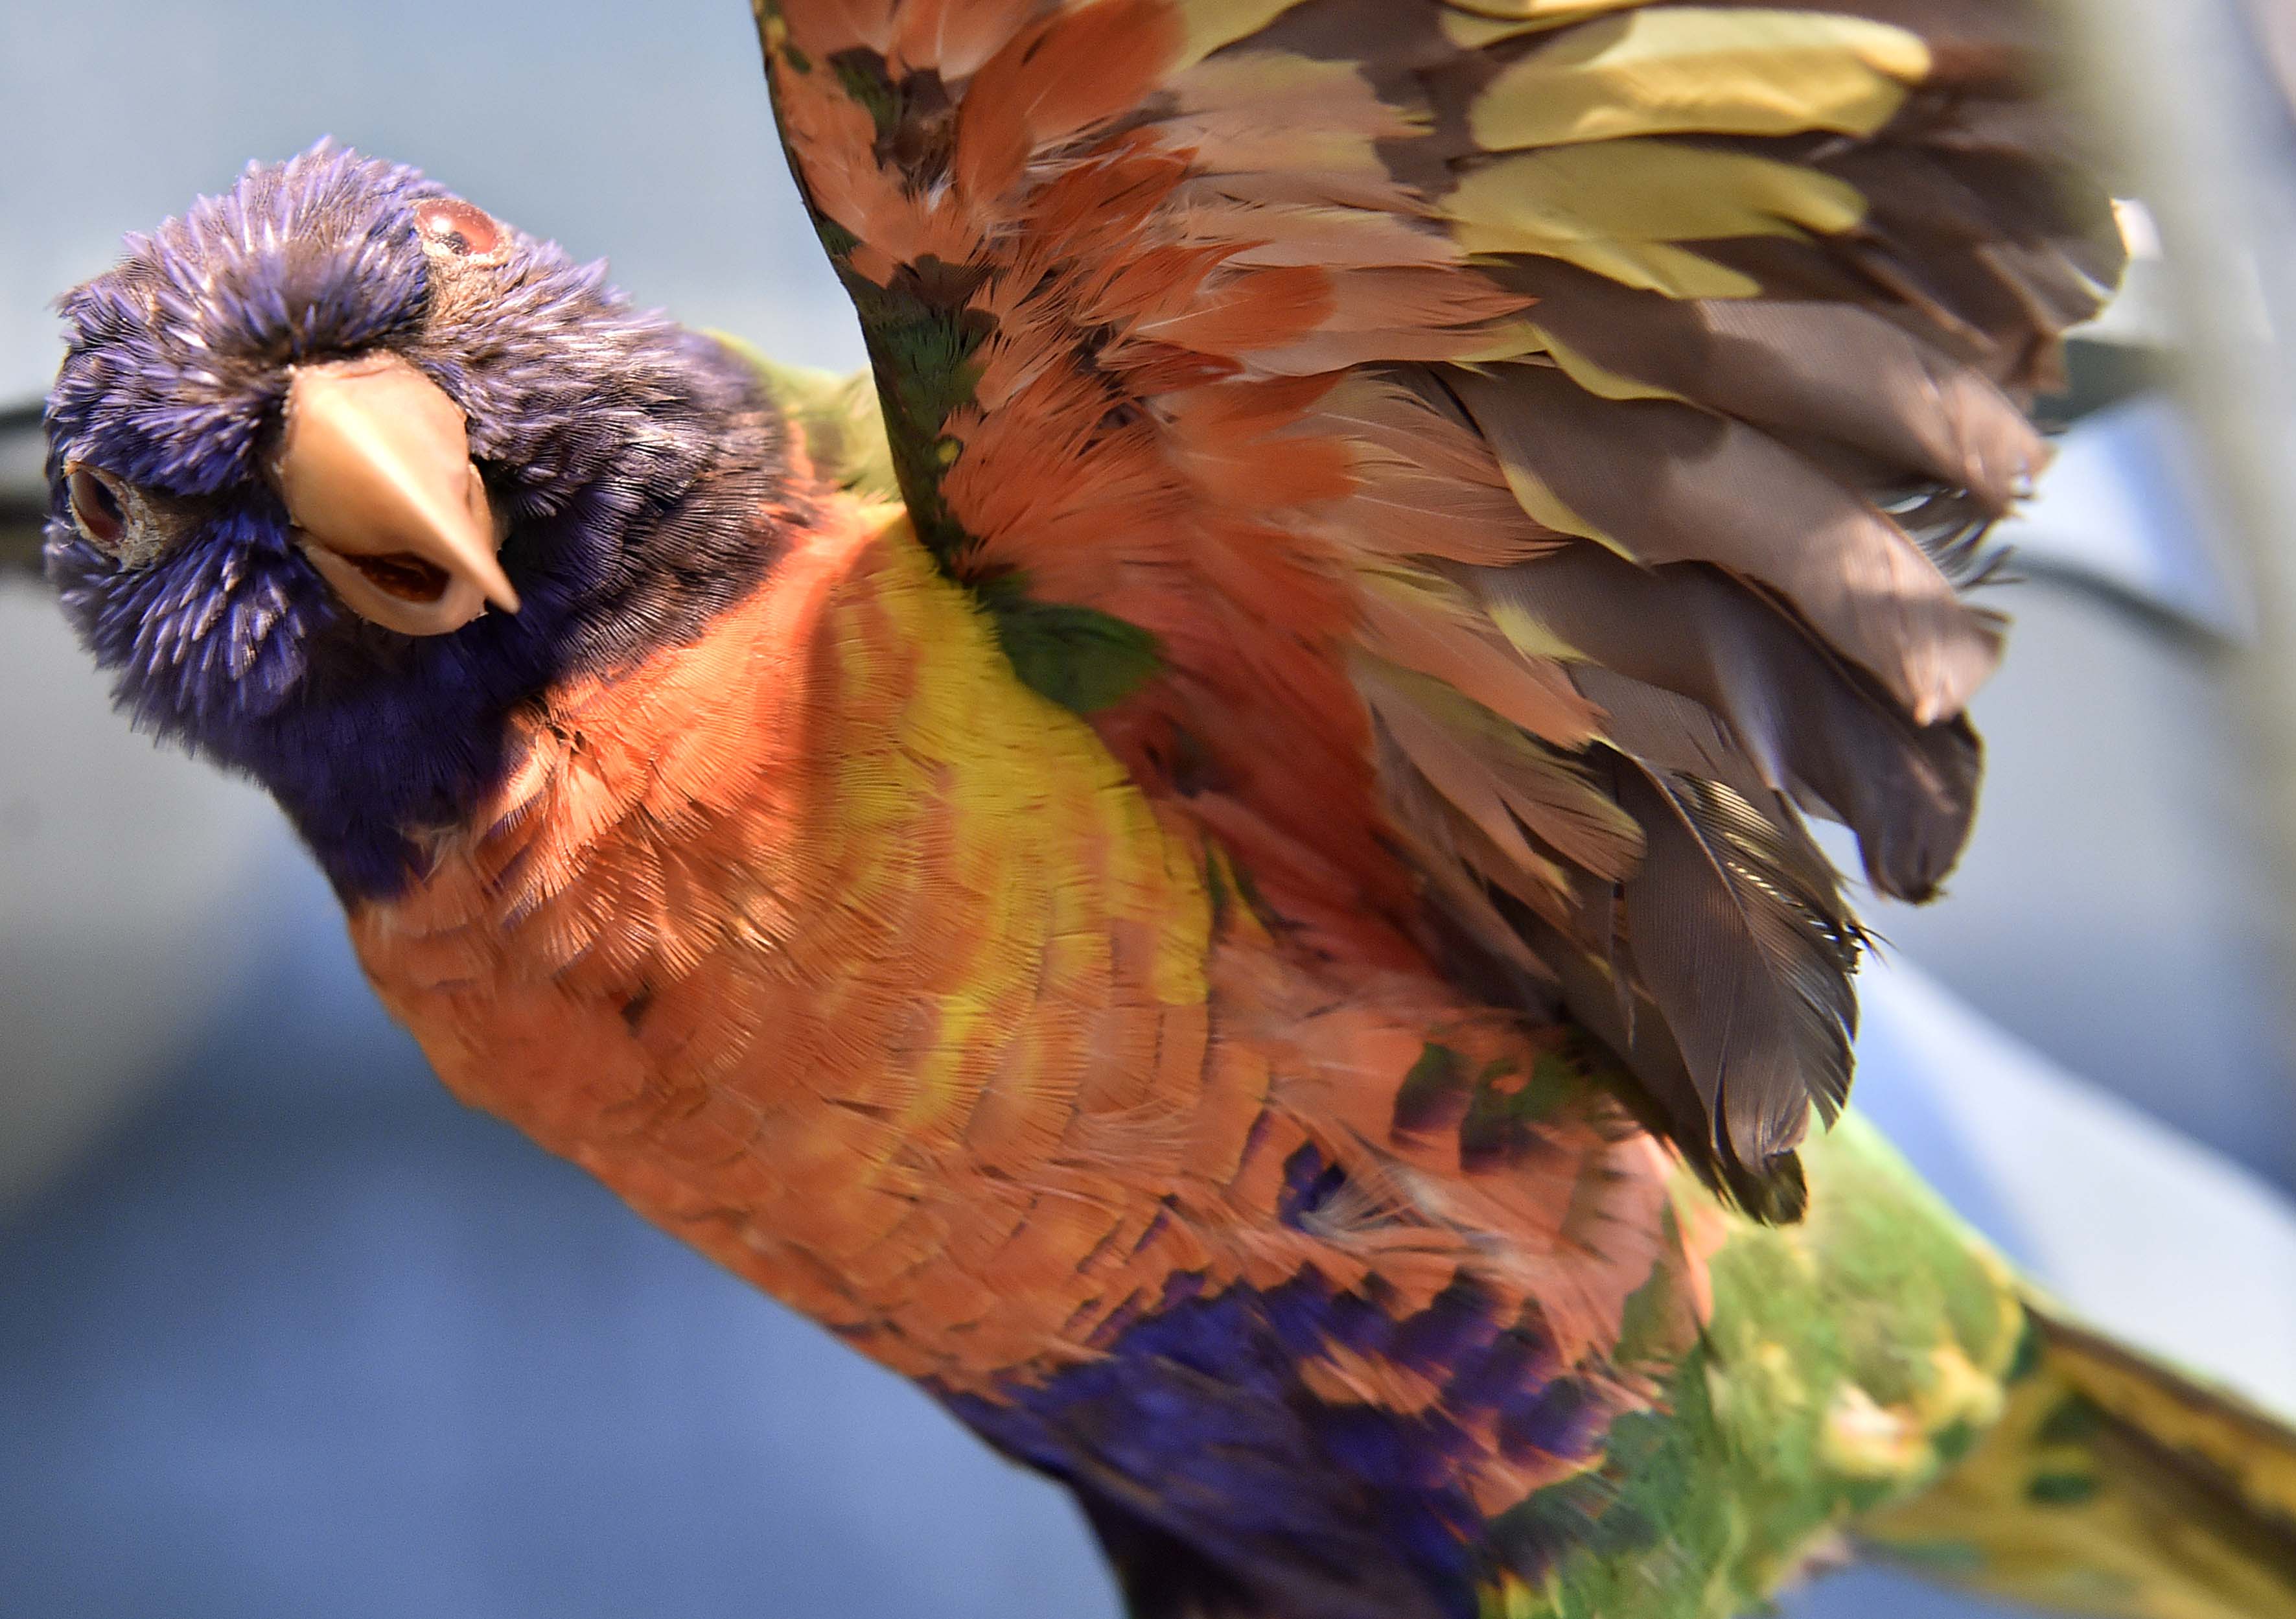 De regenbooglori, geëxposeerd met andere exotische, deels bedreigde, vogels.The rainbow lorikeet.